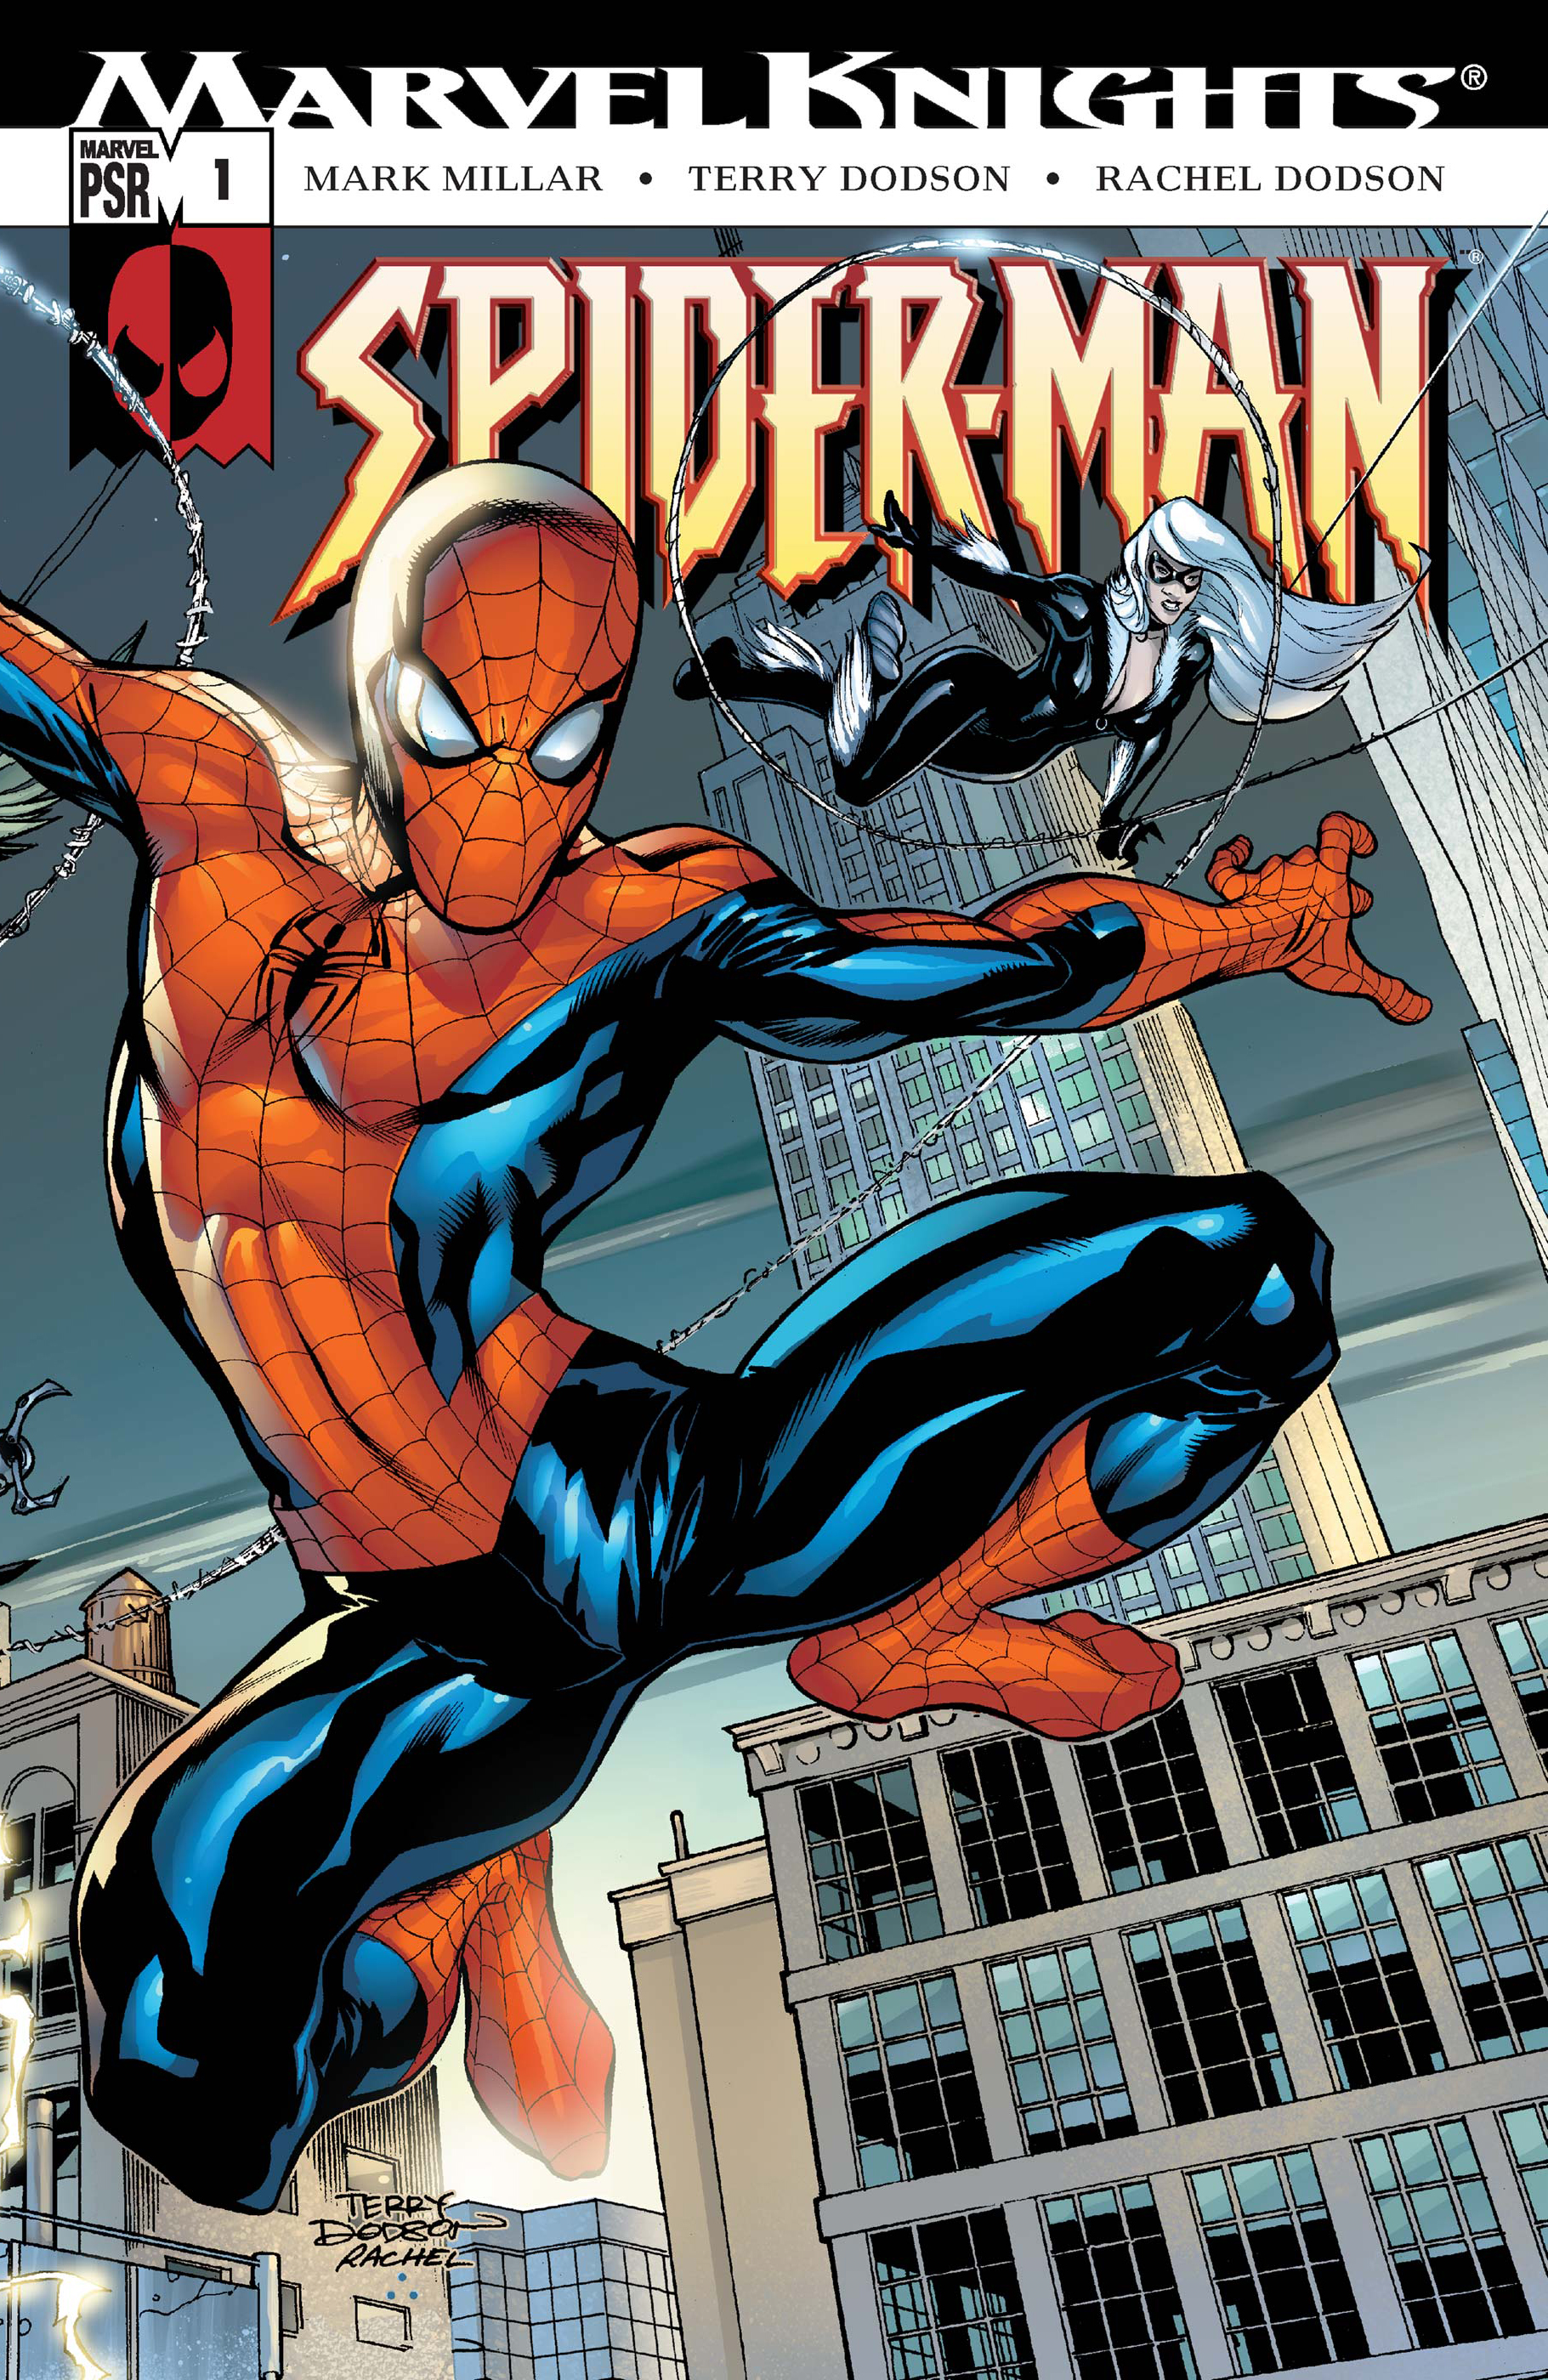 Marvel Knights Spider-Man (2004) #1